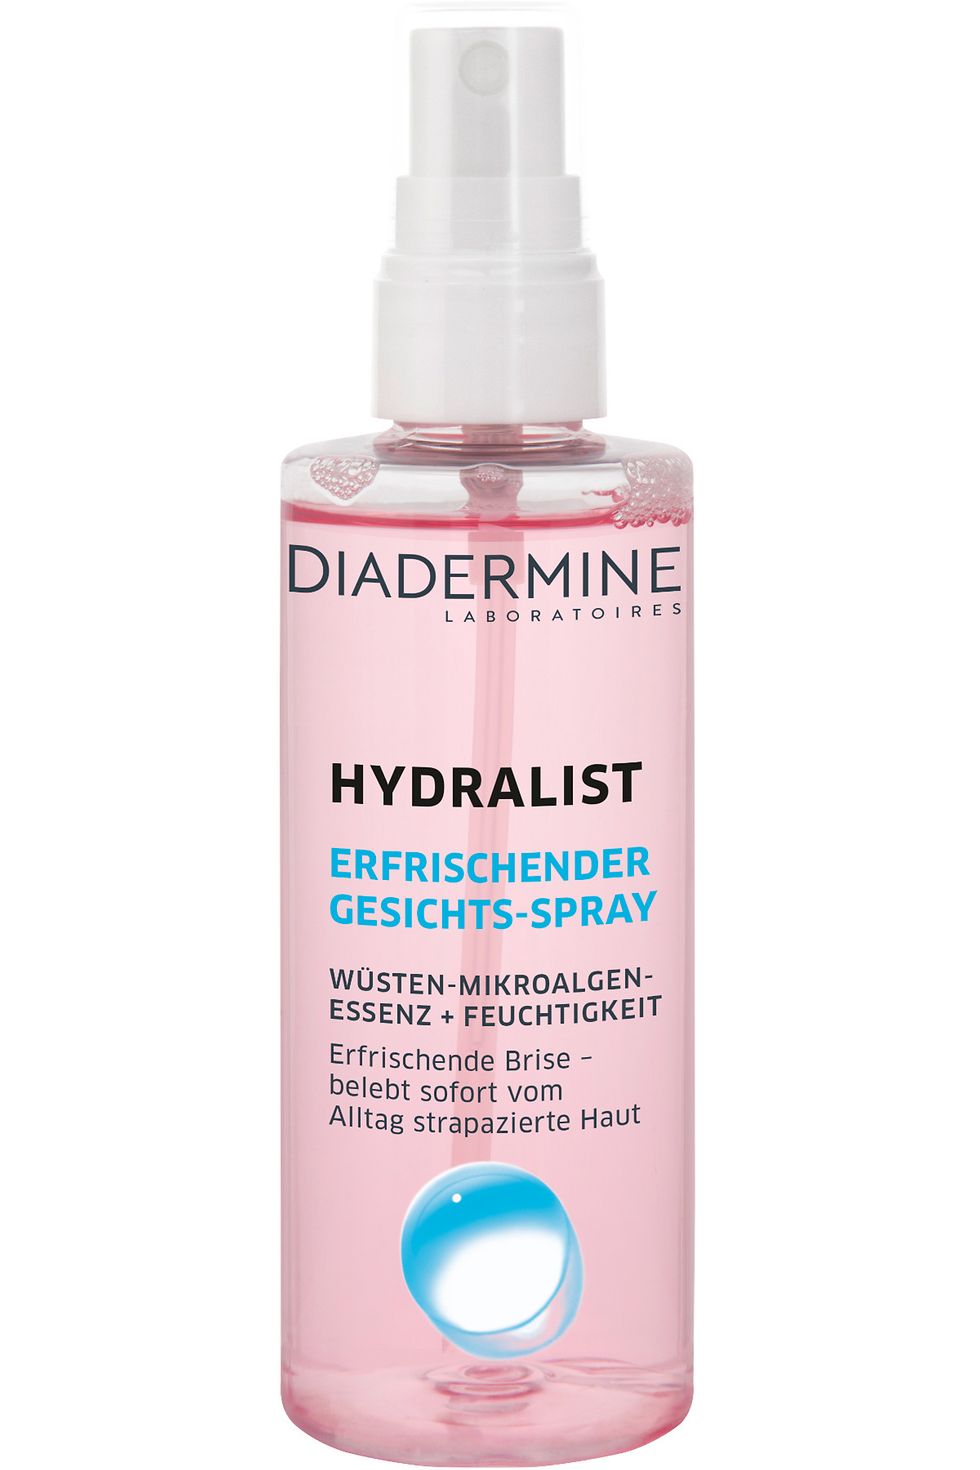 Diadermine Hydralist